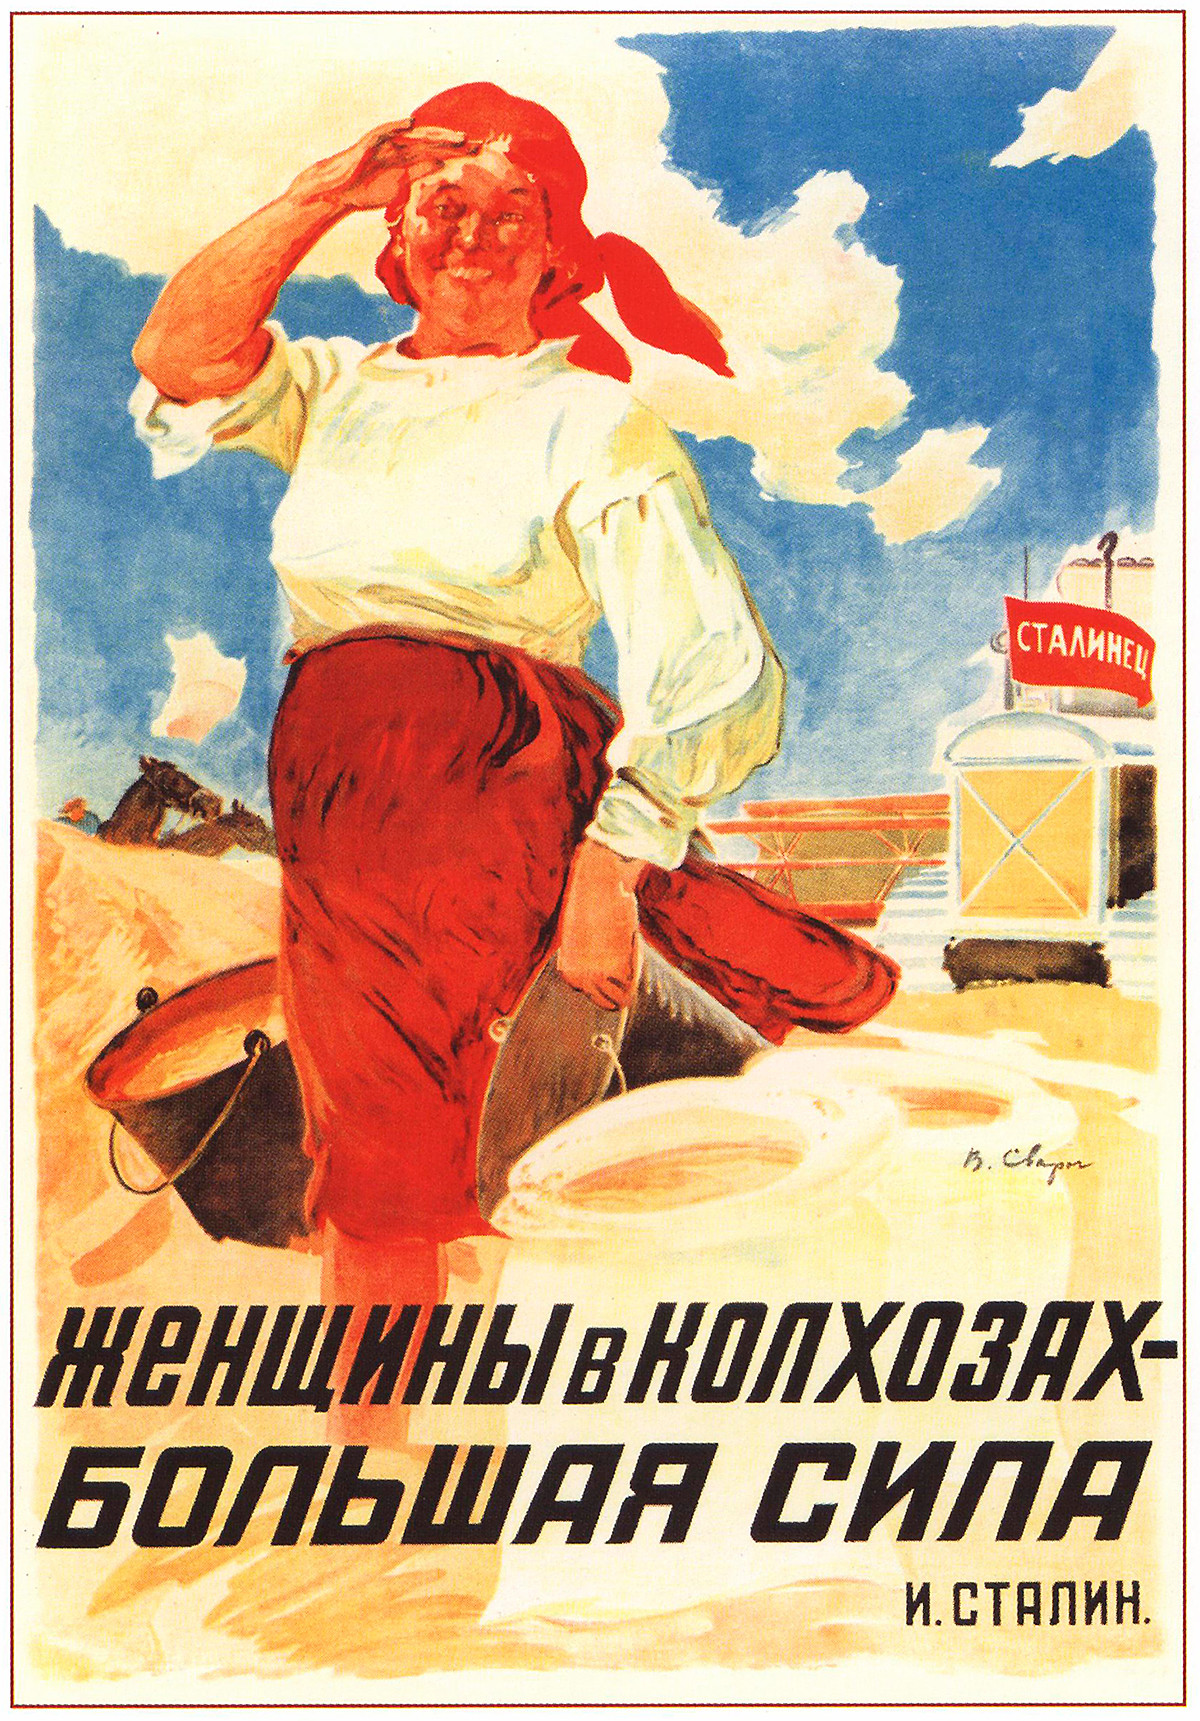 „Frauen in den Kolchosen sind eine große Kraft – Josef Stalin“.